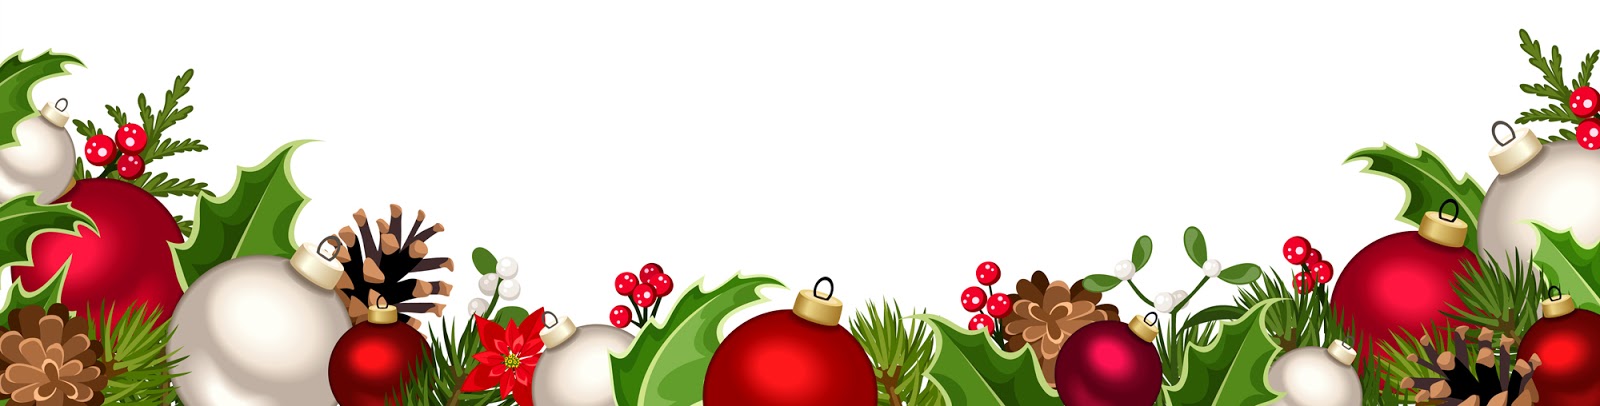 Banco de Imágenes Gratis: 4 nuevas imágenes navideñas con esferas y adornos  para la portada de tu Facebook y para diseñar tarjetas y postales de Navidad